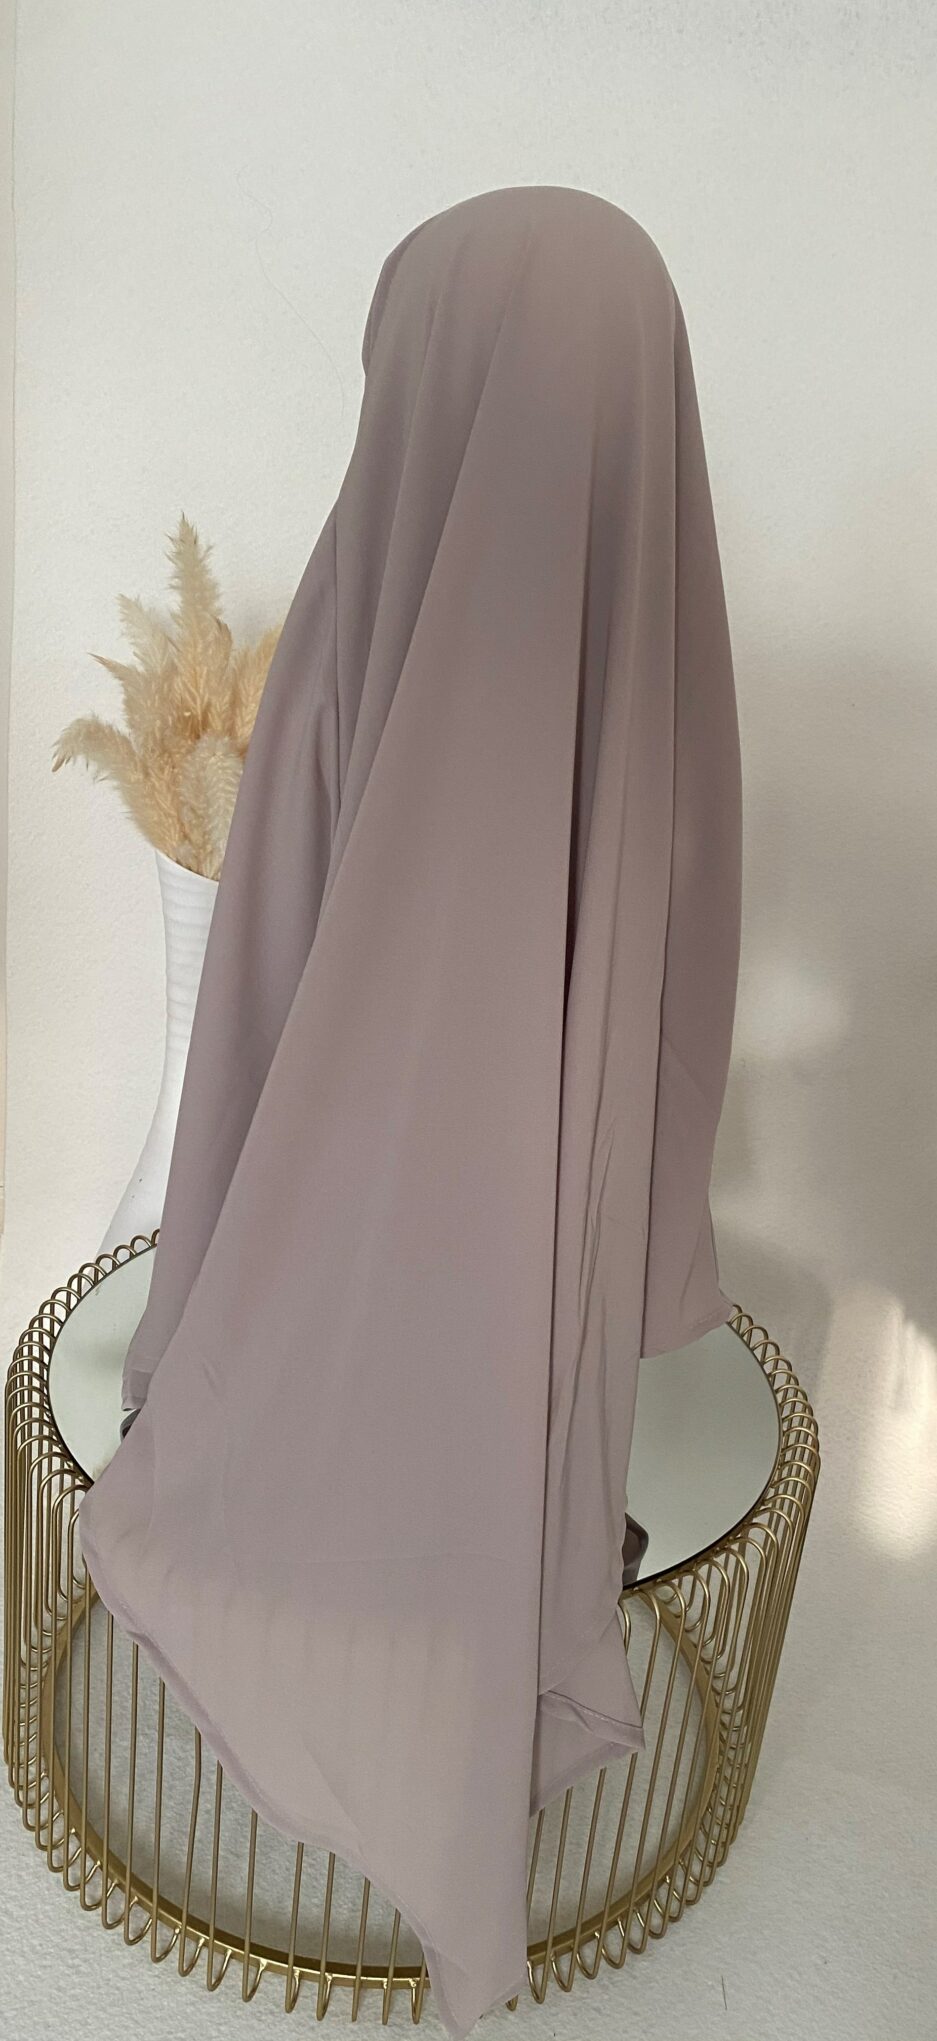 Khimar gris, long hijab pour la femme musulmane voilée, Cendrijab vend en ligne des khimar de bonne qualité et pas cher, la livraison est rapide , Cendrijab propose un large choix de couleurs, vente de khimar en gros et au détails, notre stock est disponible en France